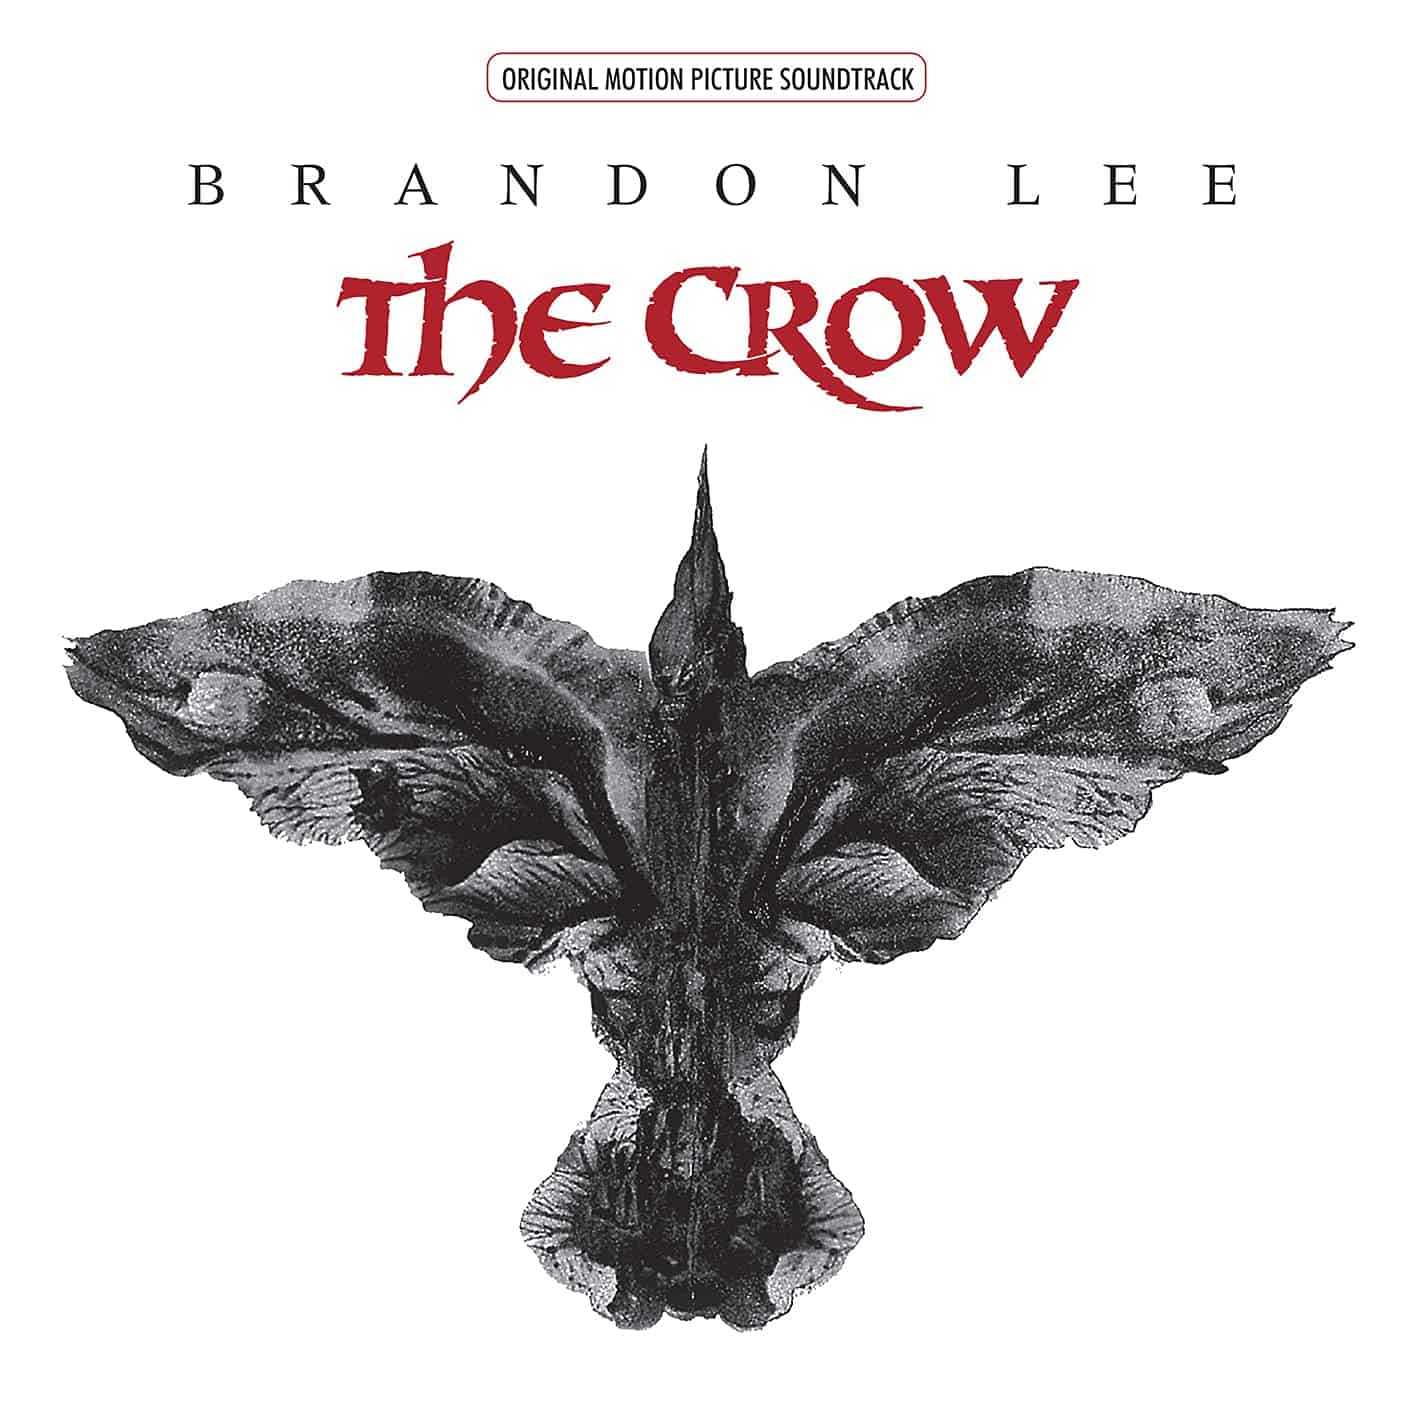 The-Crow-Soundtrack-OST-vinyl-record-album1